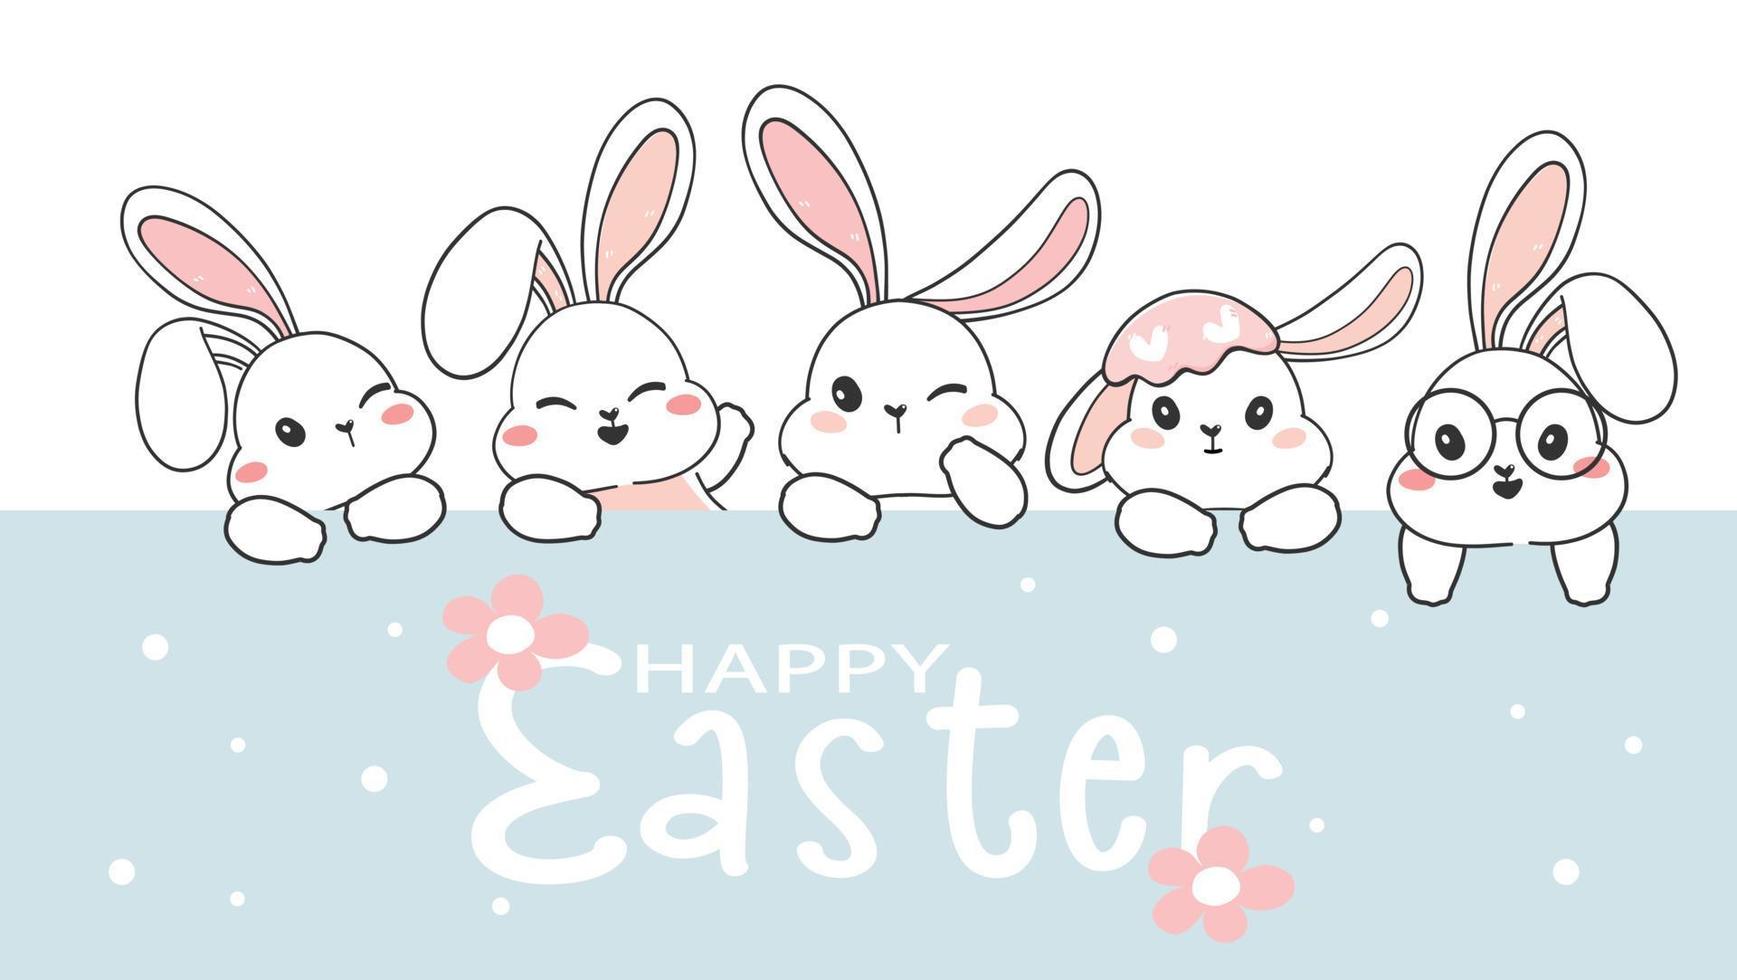 söt glad påsk gratulationskort, grupp av vita kaninhuvuden, söt kanin karaktärsuppsättning, tecknad vilda djur semester teckning vektor